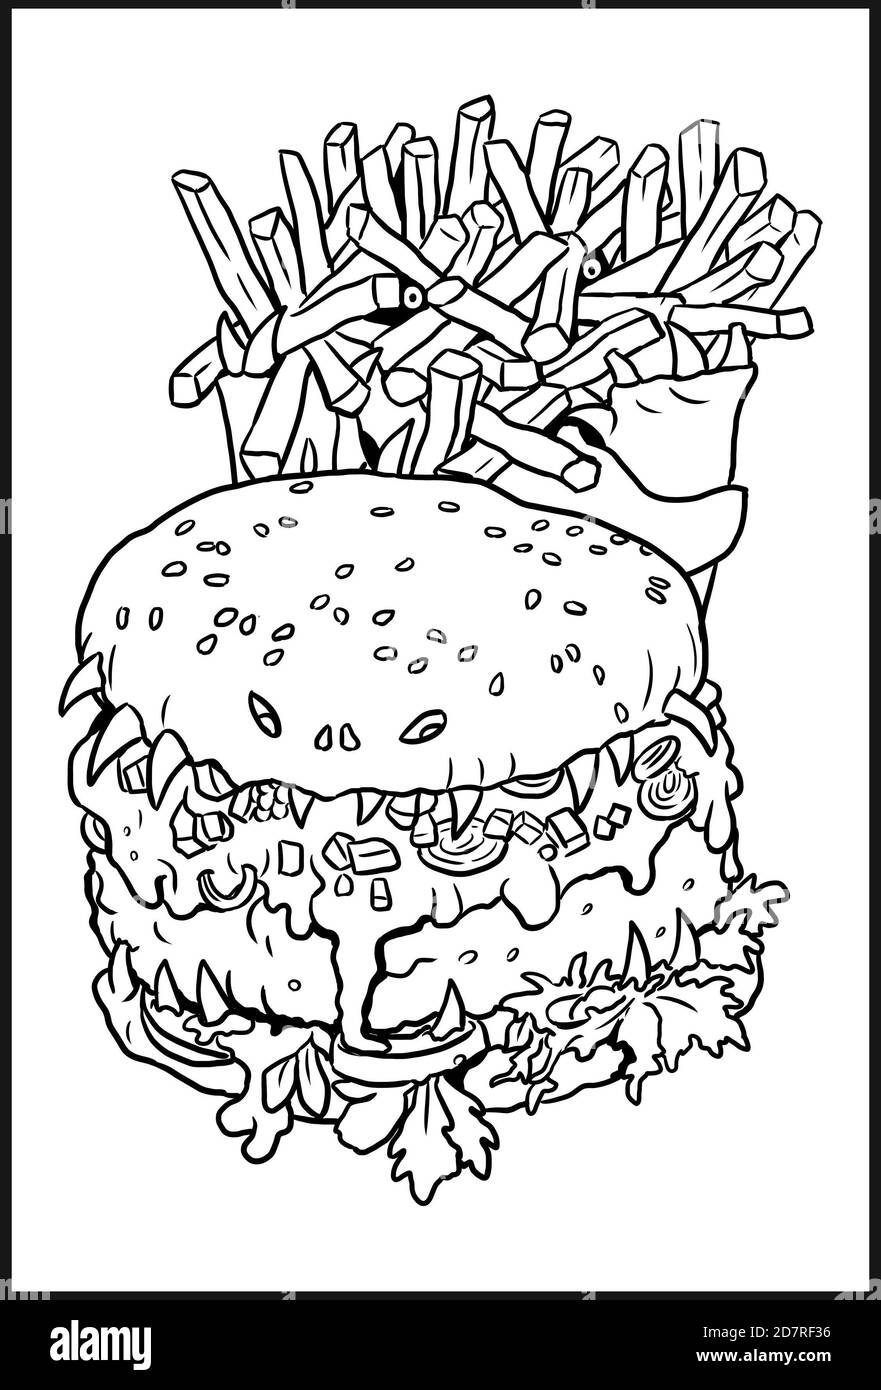 Dessin de hamburgers et de frites monstrueuses. Modèle de coloriage pour Halloween. Banque D'Images